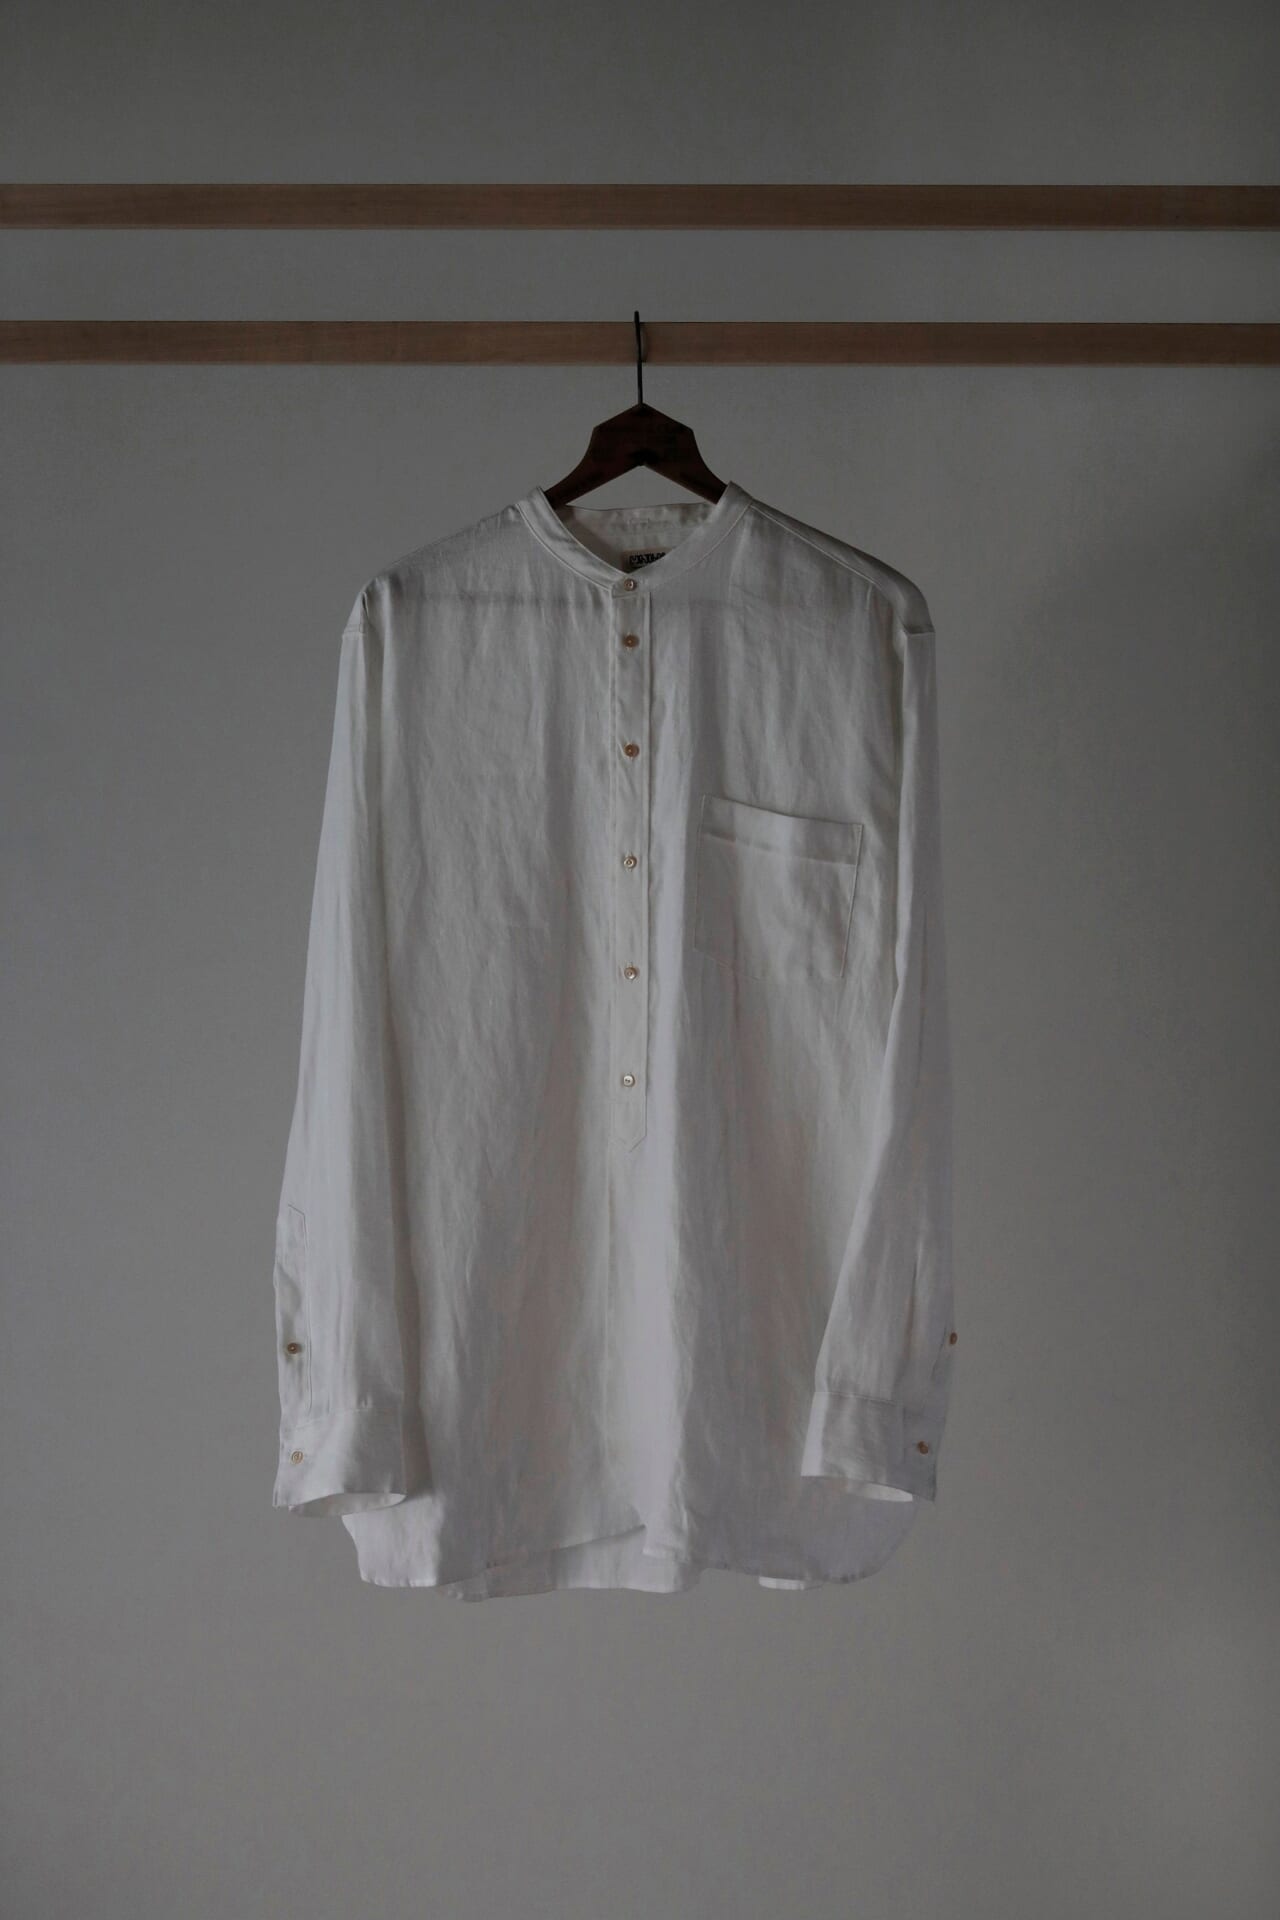 ニューヨークで発見した1910年代のドレスシャツをベースに製作したアイテム。 Lot.104 Band Collar Shirt  38,500円